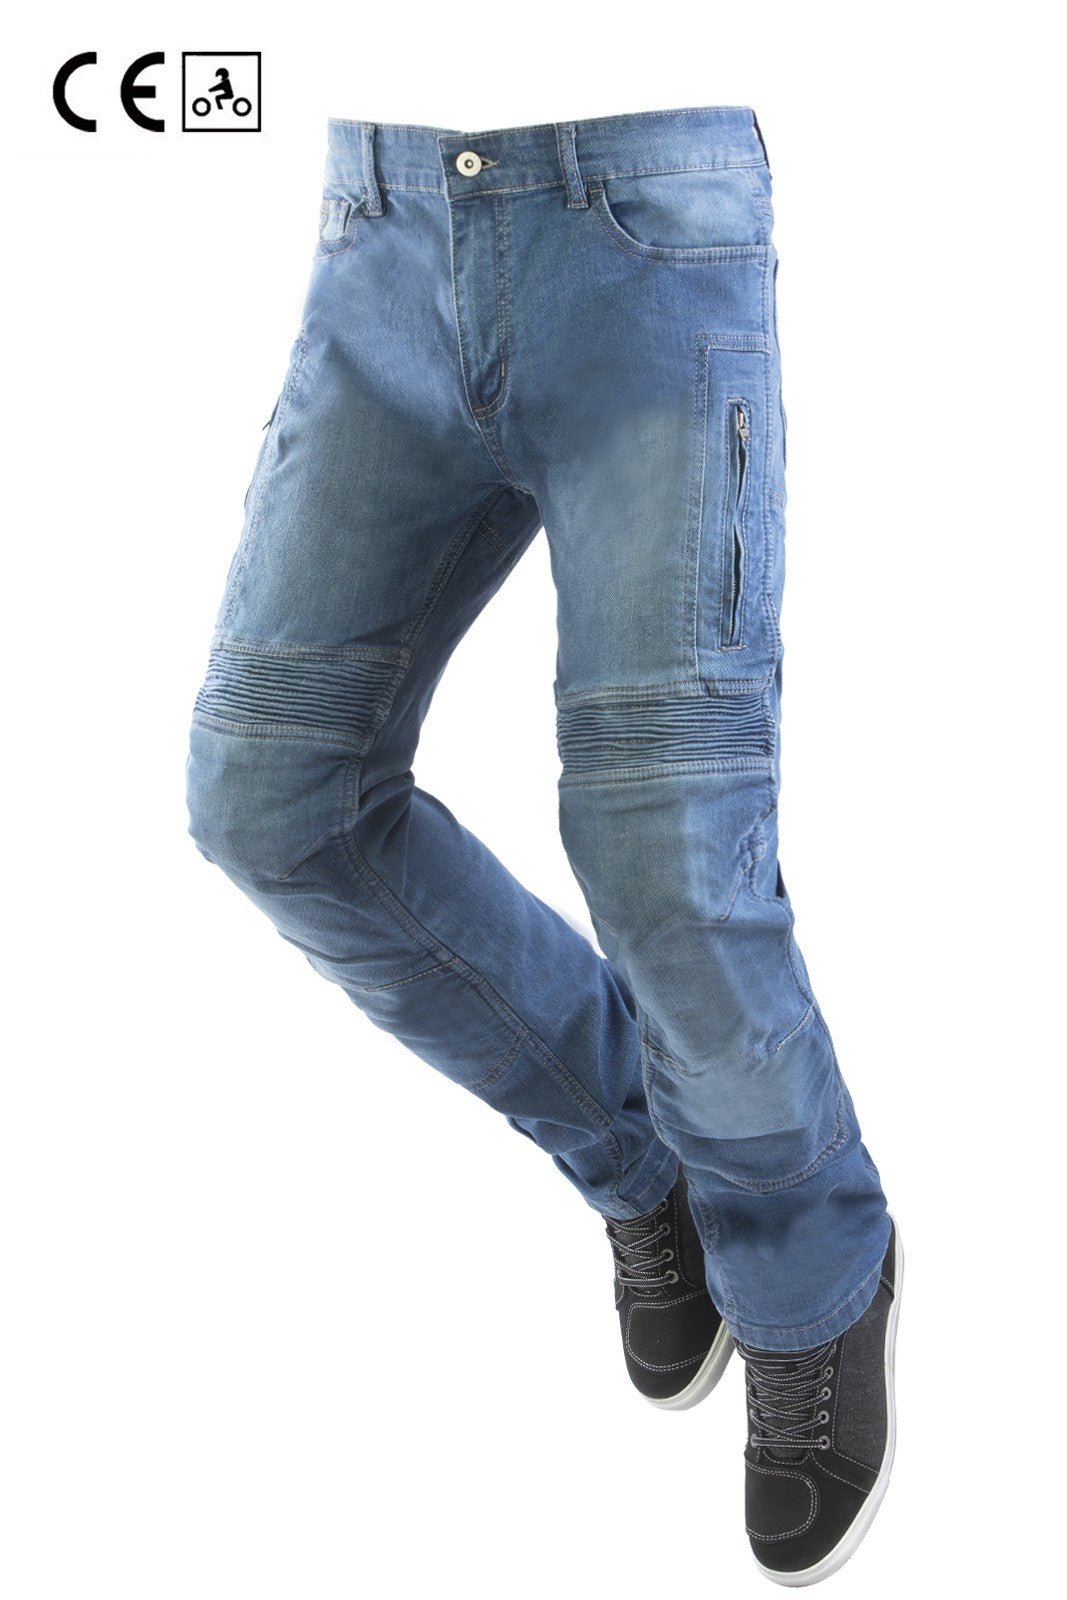 Jeans moto OJ UPGRADE uomo estivi ventilati con protezioni